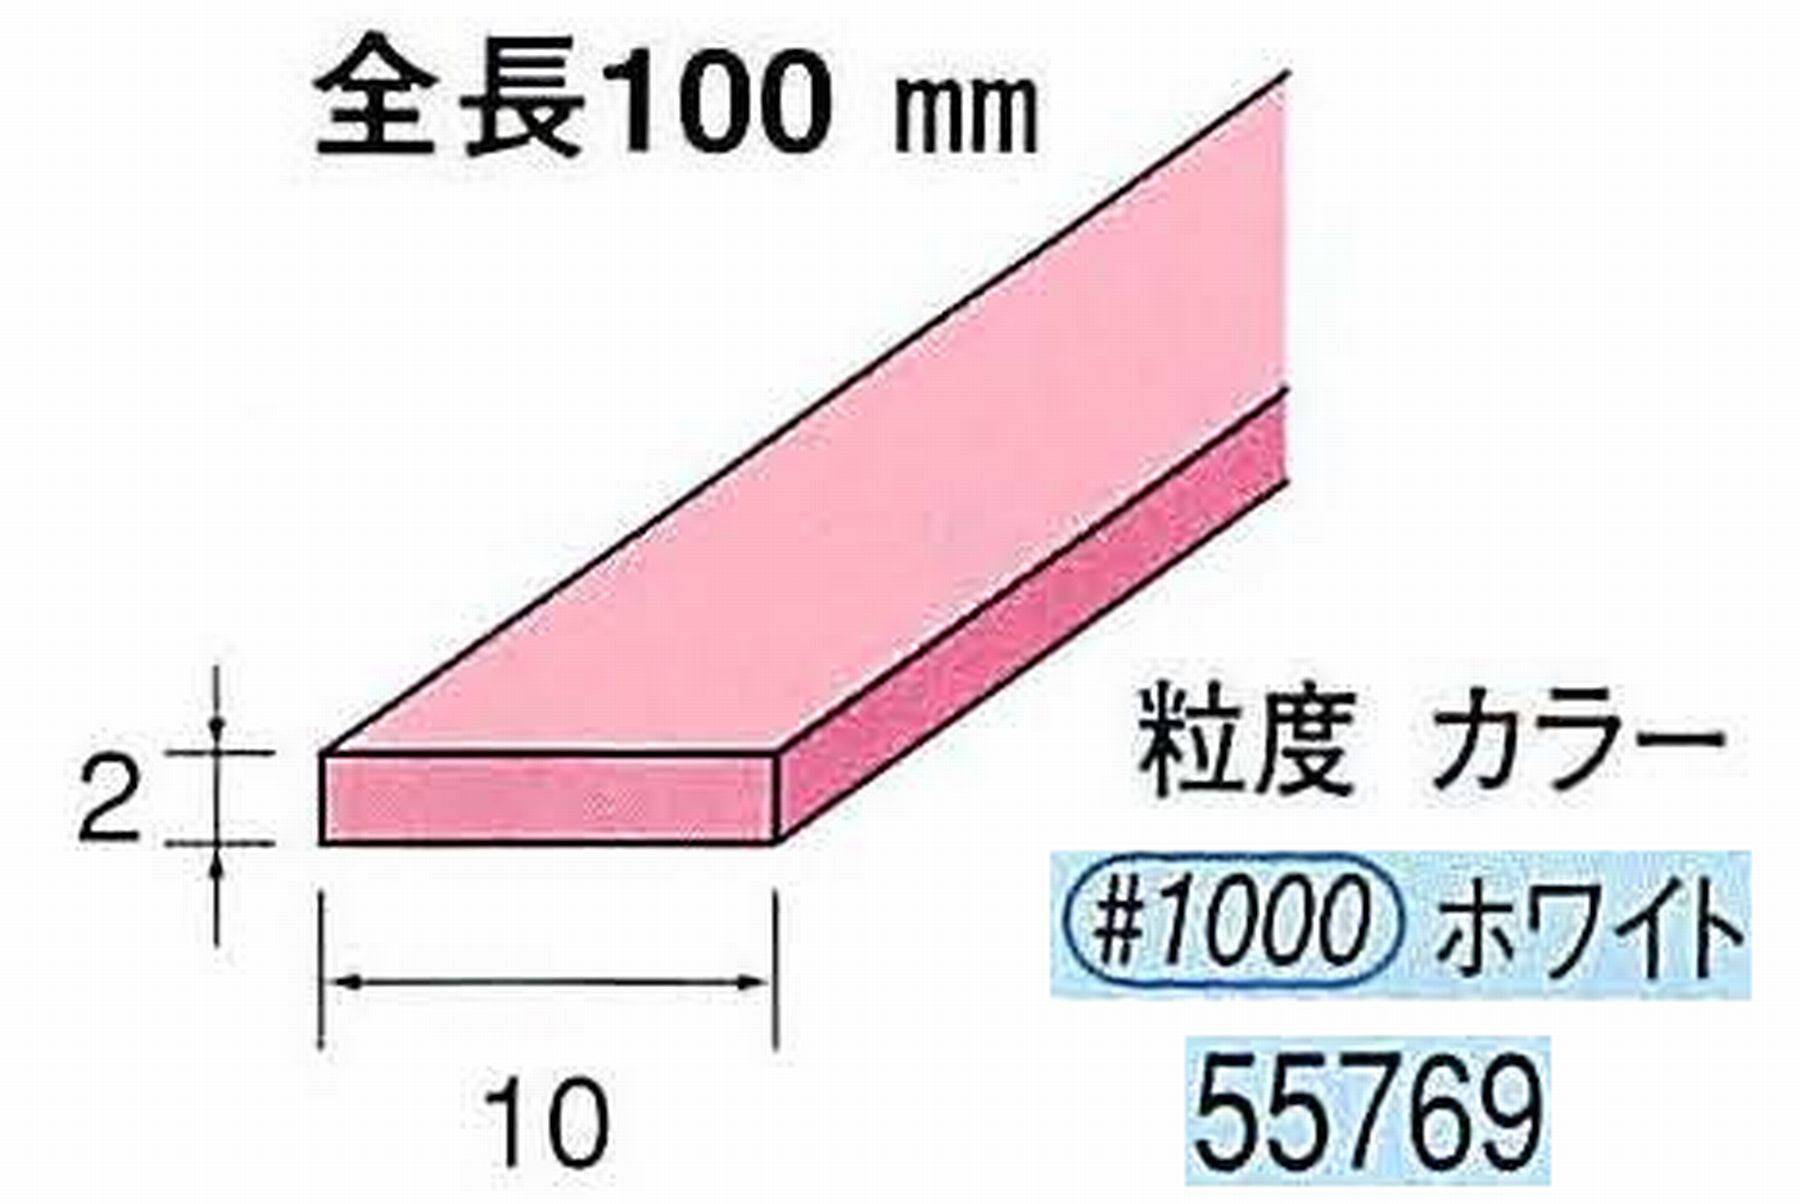 ナカニシ/NAKANISHI セラファイバー砥石 全長100mm ホワイト 55769